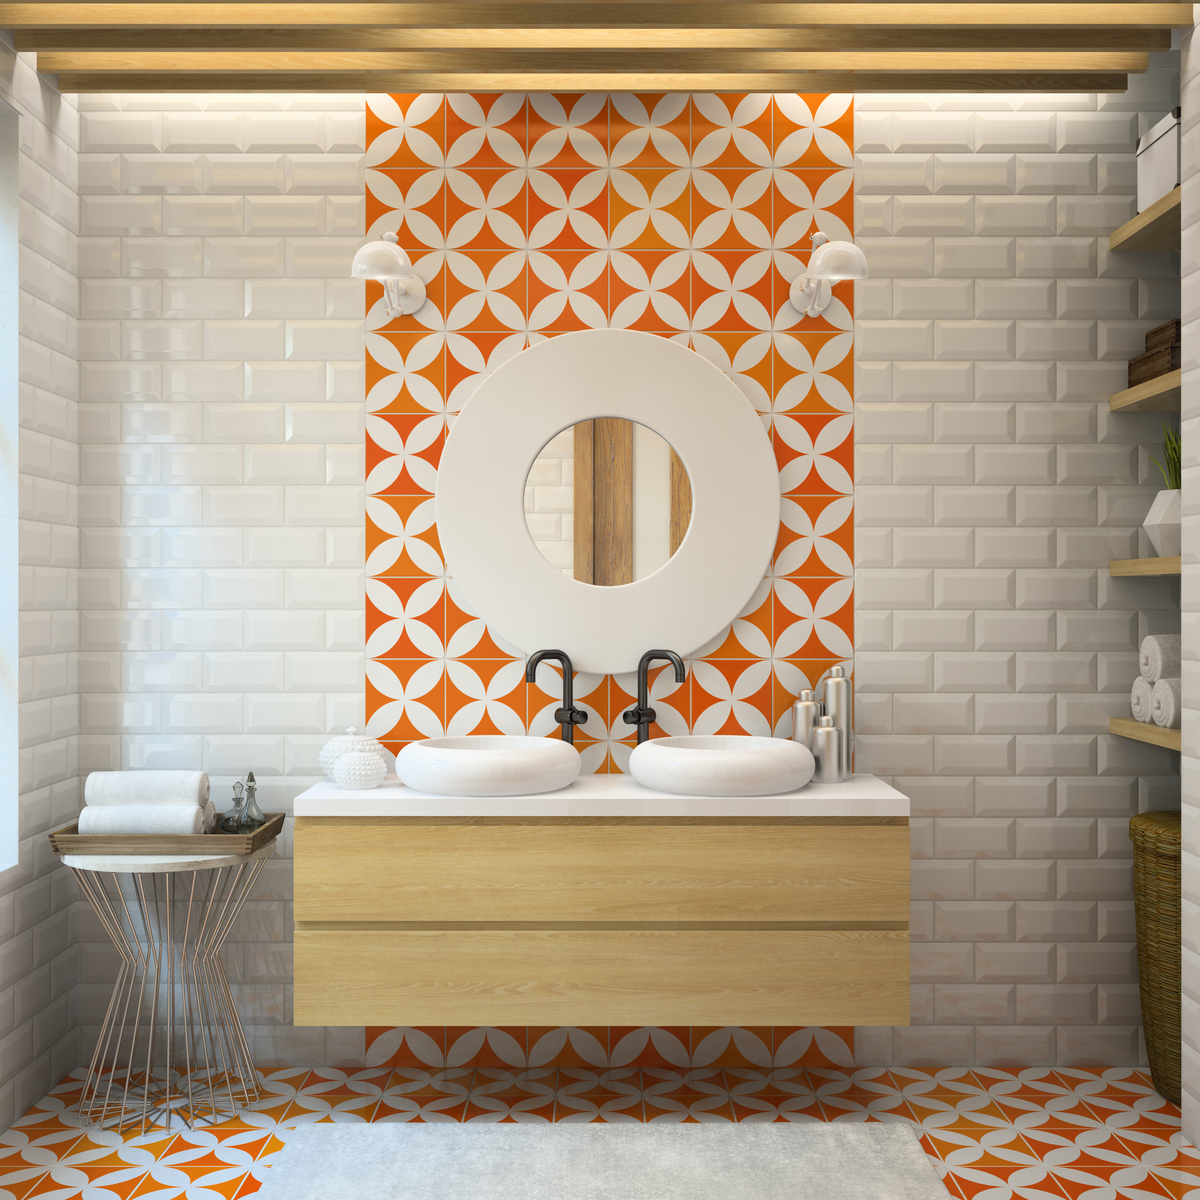 Baño de estilo moderno con azulejos en naranja para el suelo y la pared